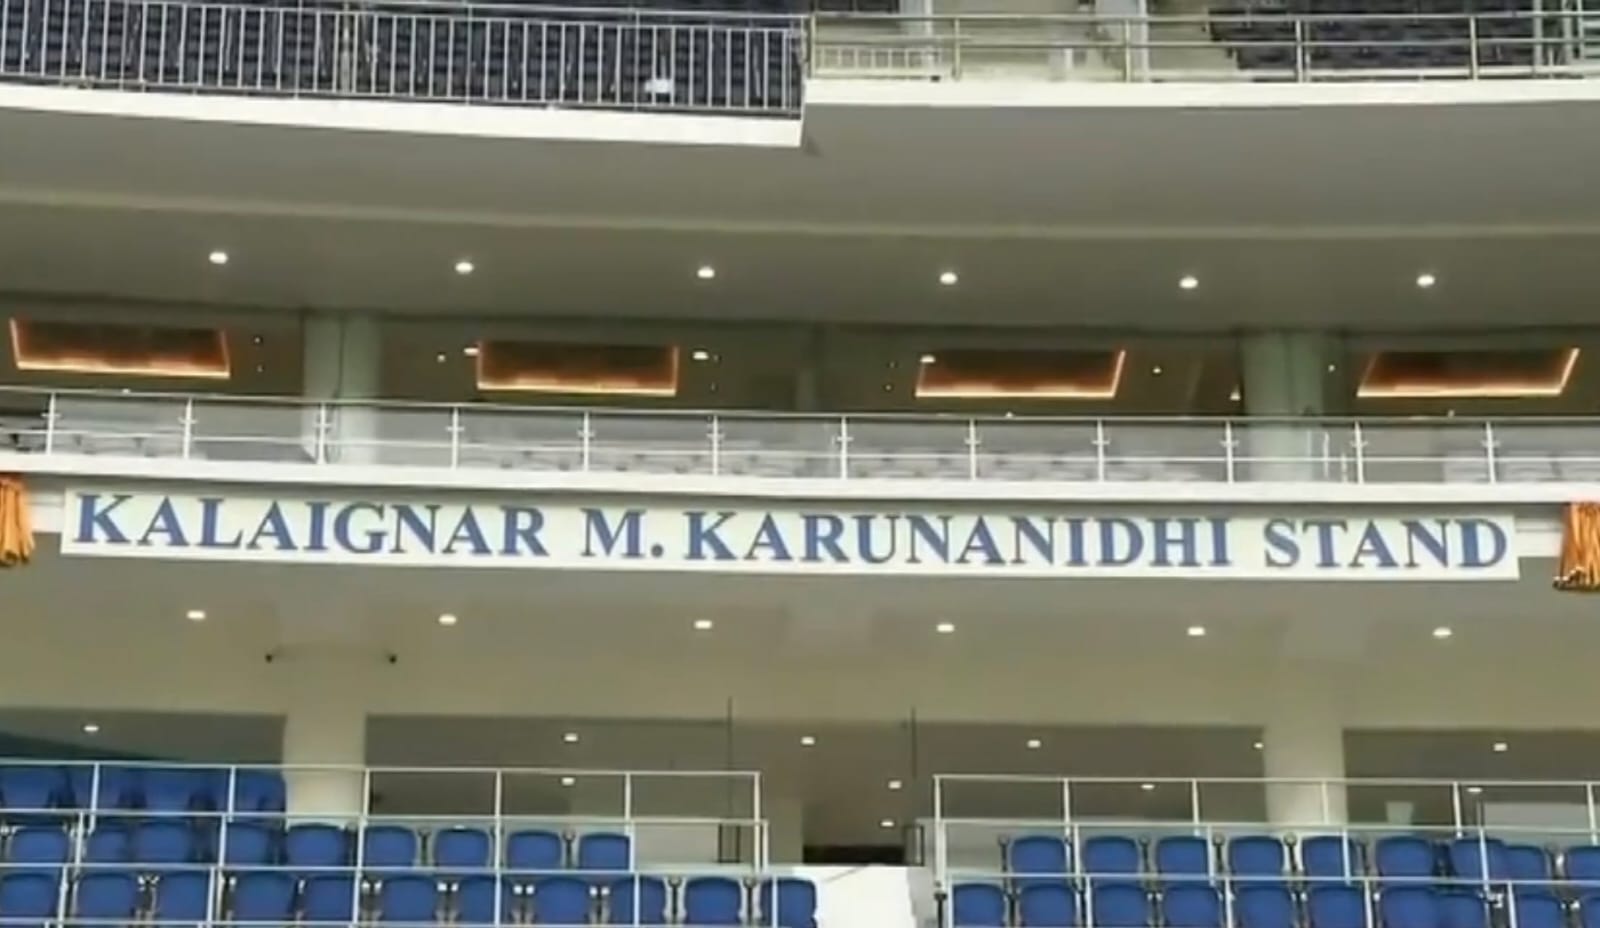 Chennai MA Chidambaram Stadium Stand Named as Karunanidhi Stand